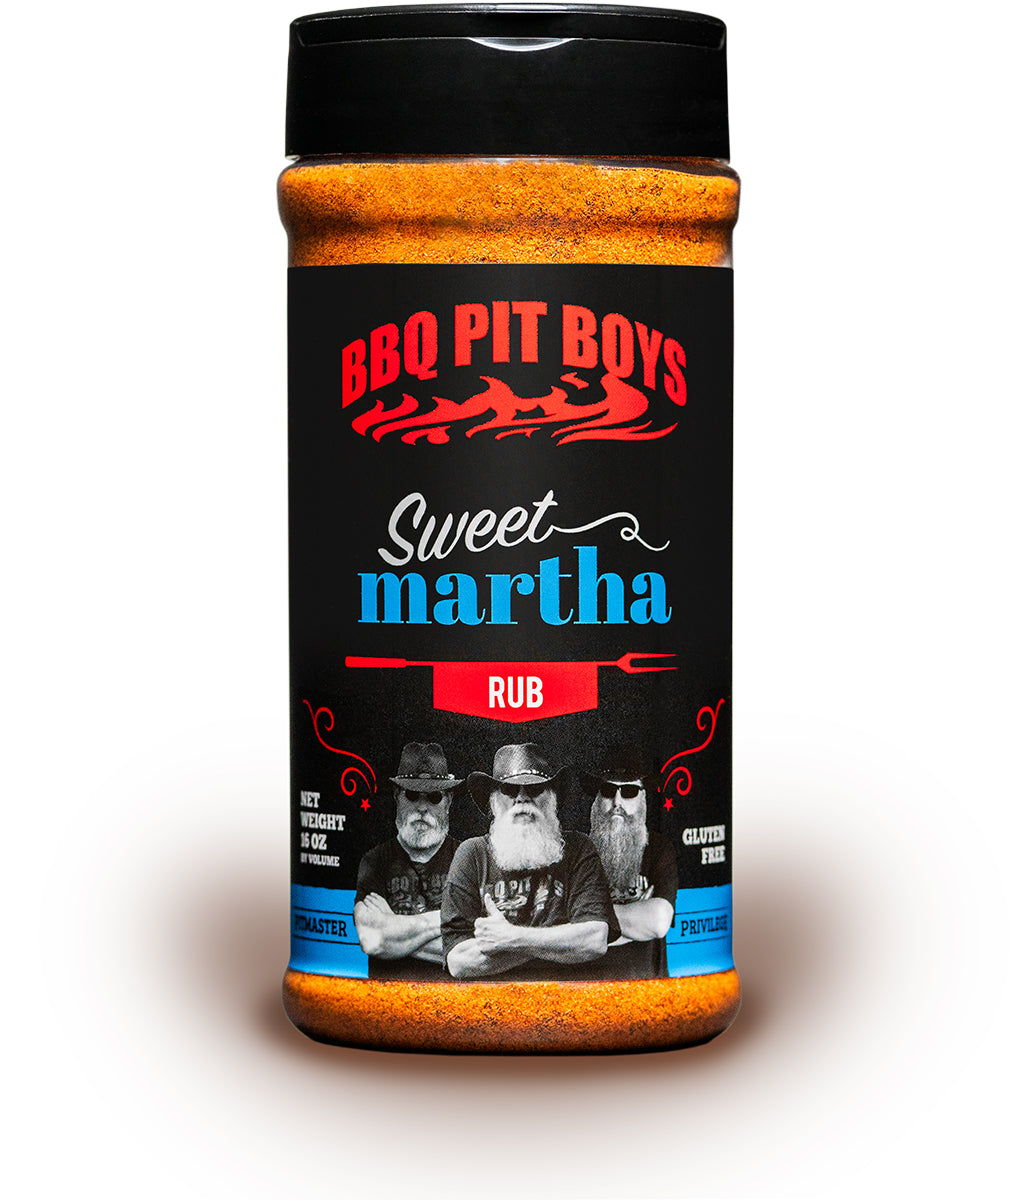 Sweet Martha – BBQ Pit Boys